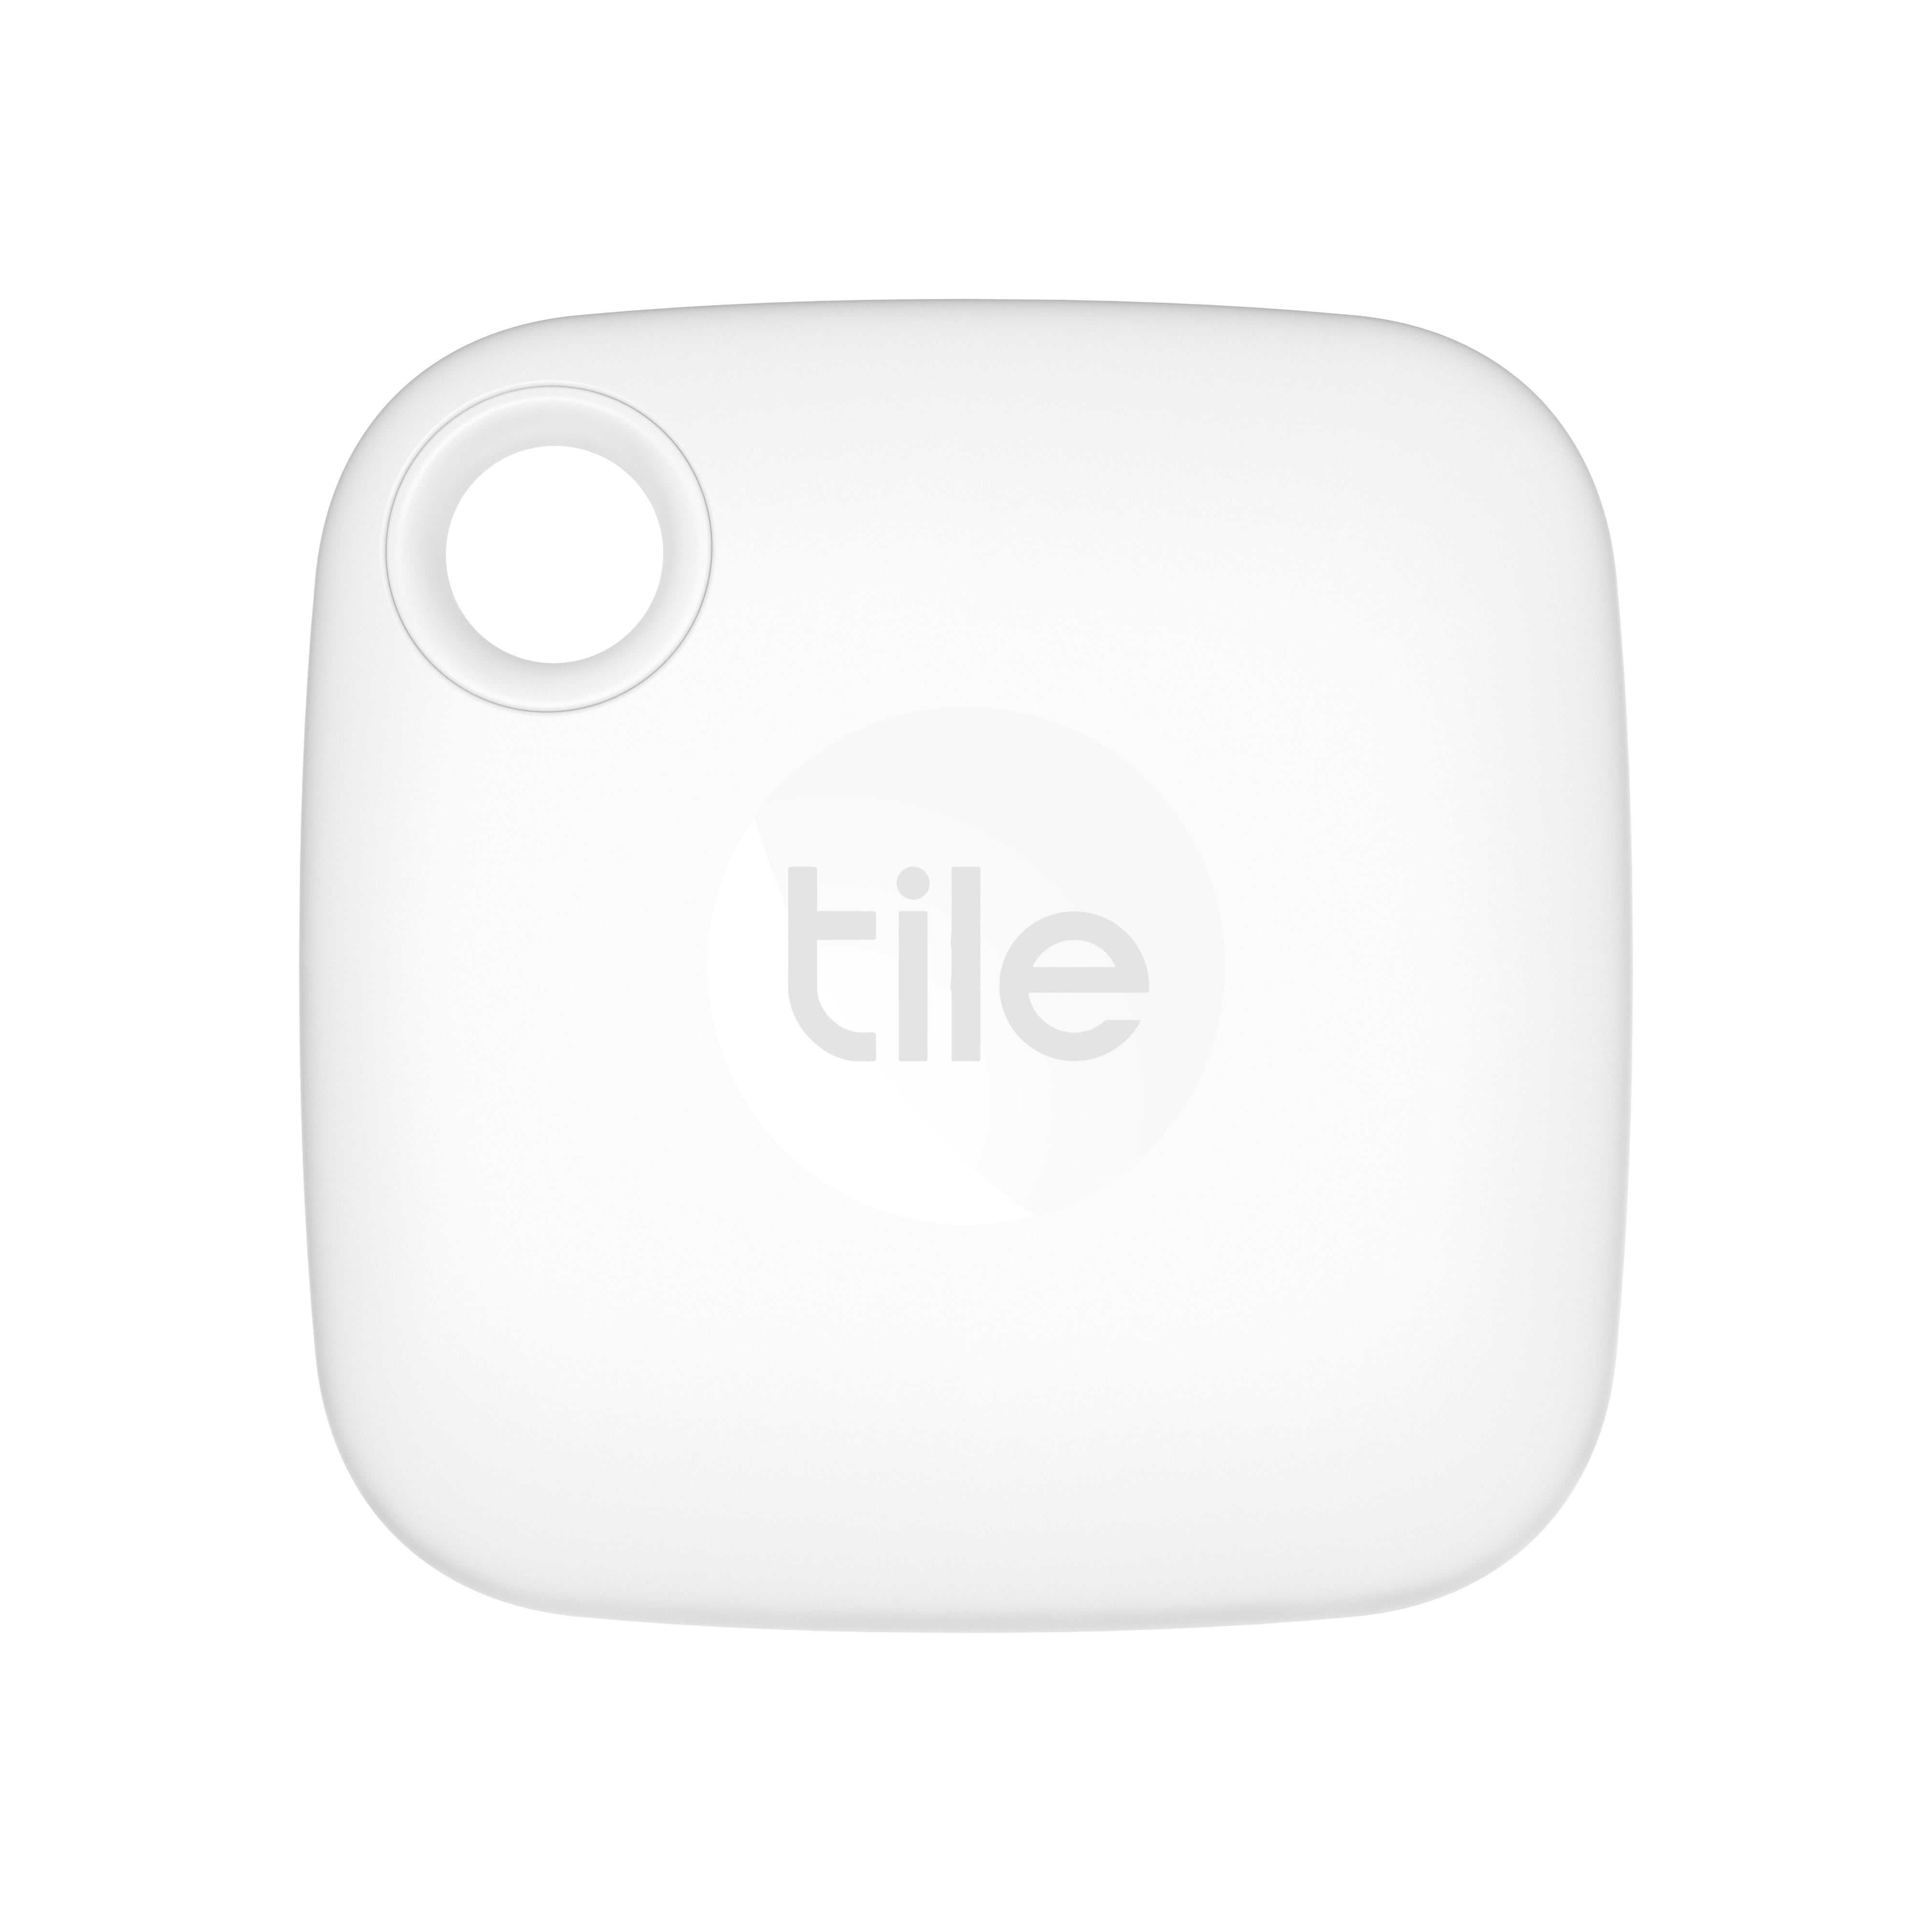 Tile Mate (2020), paquete de 1: rastreador Bluetooth, buscador de